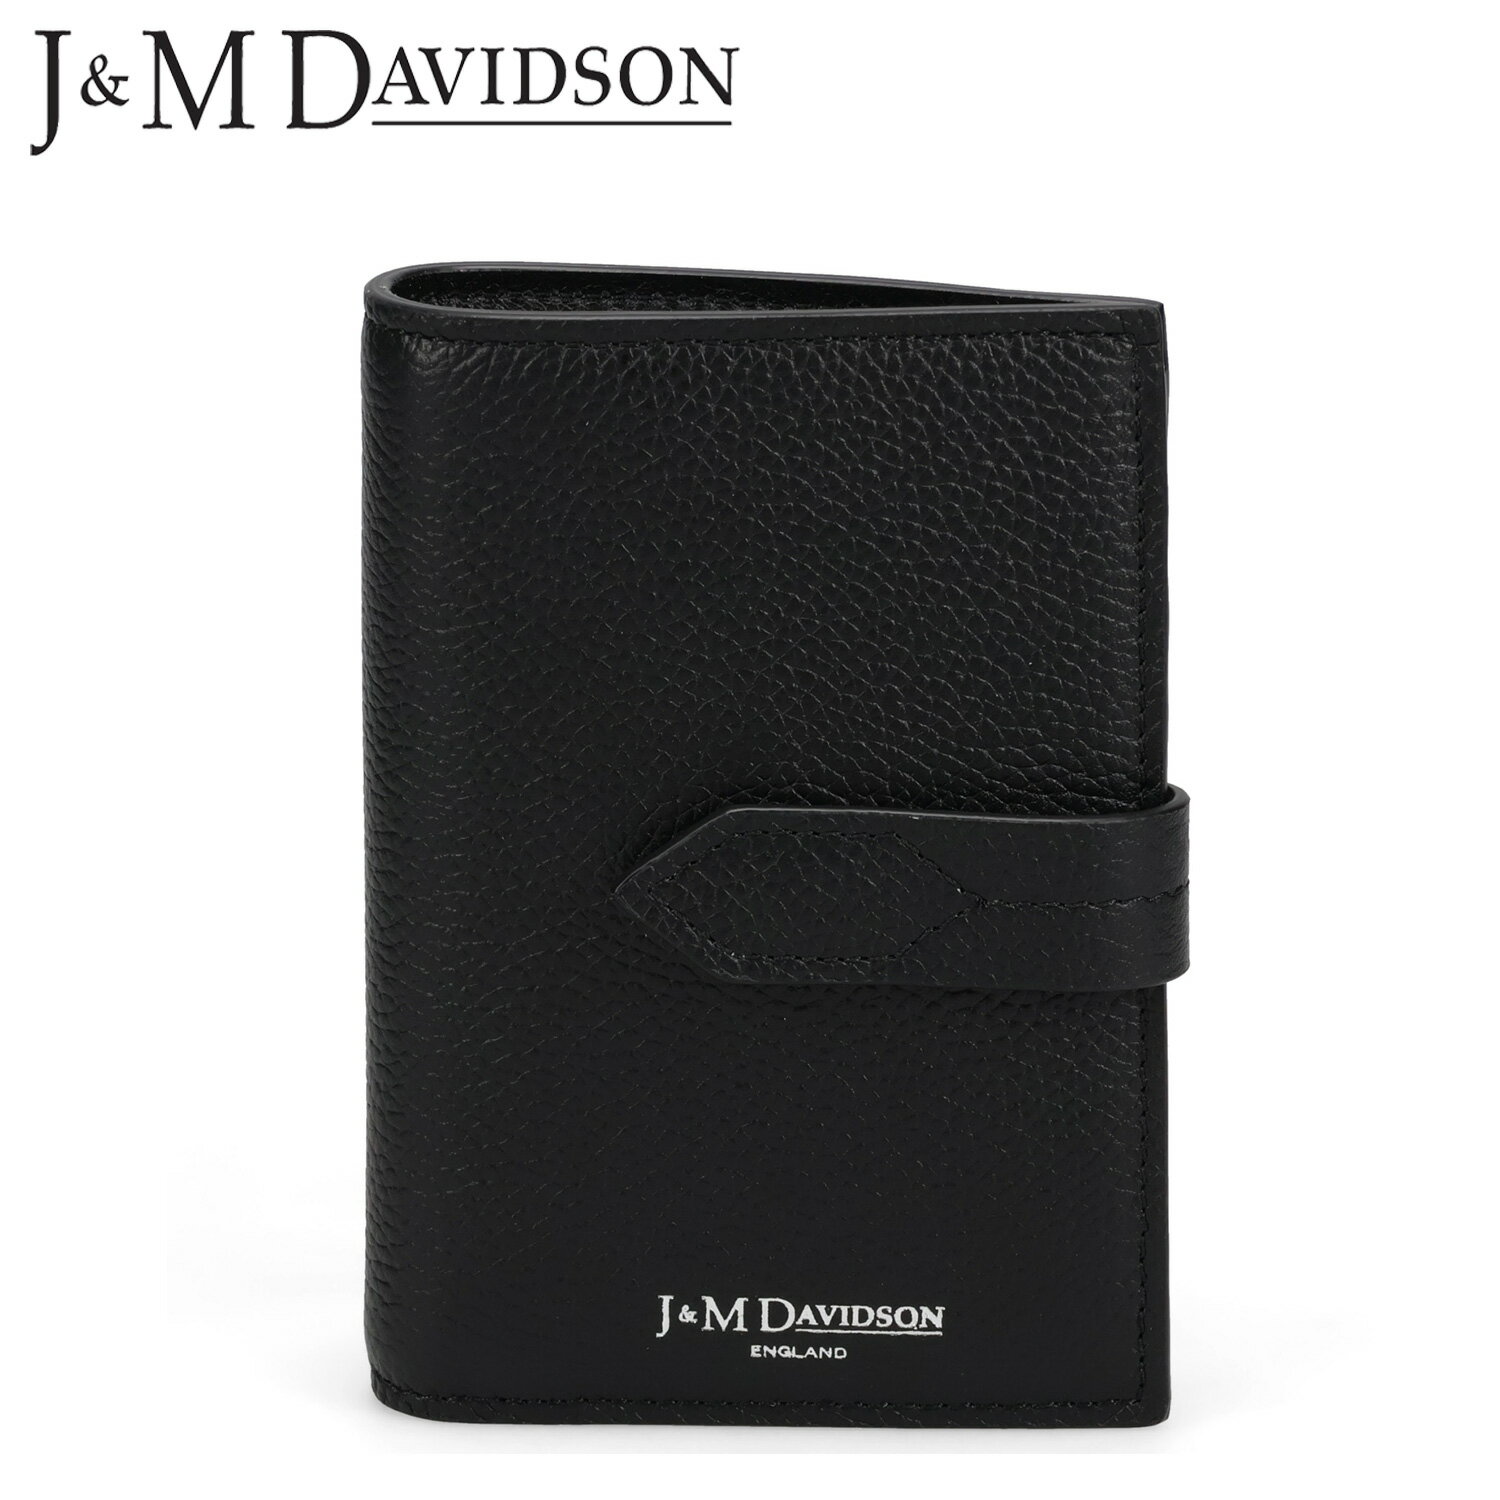 J&M DAVIDSON ジェイアンドエムデヴィッドソン 財布 二つ折り ロサンジ フォルド ウォレット メンズ レディース LOSANGE FOLD WALLET ブラック 黒 SLSF-0XX-SGSC